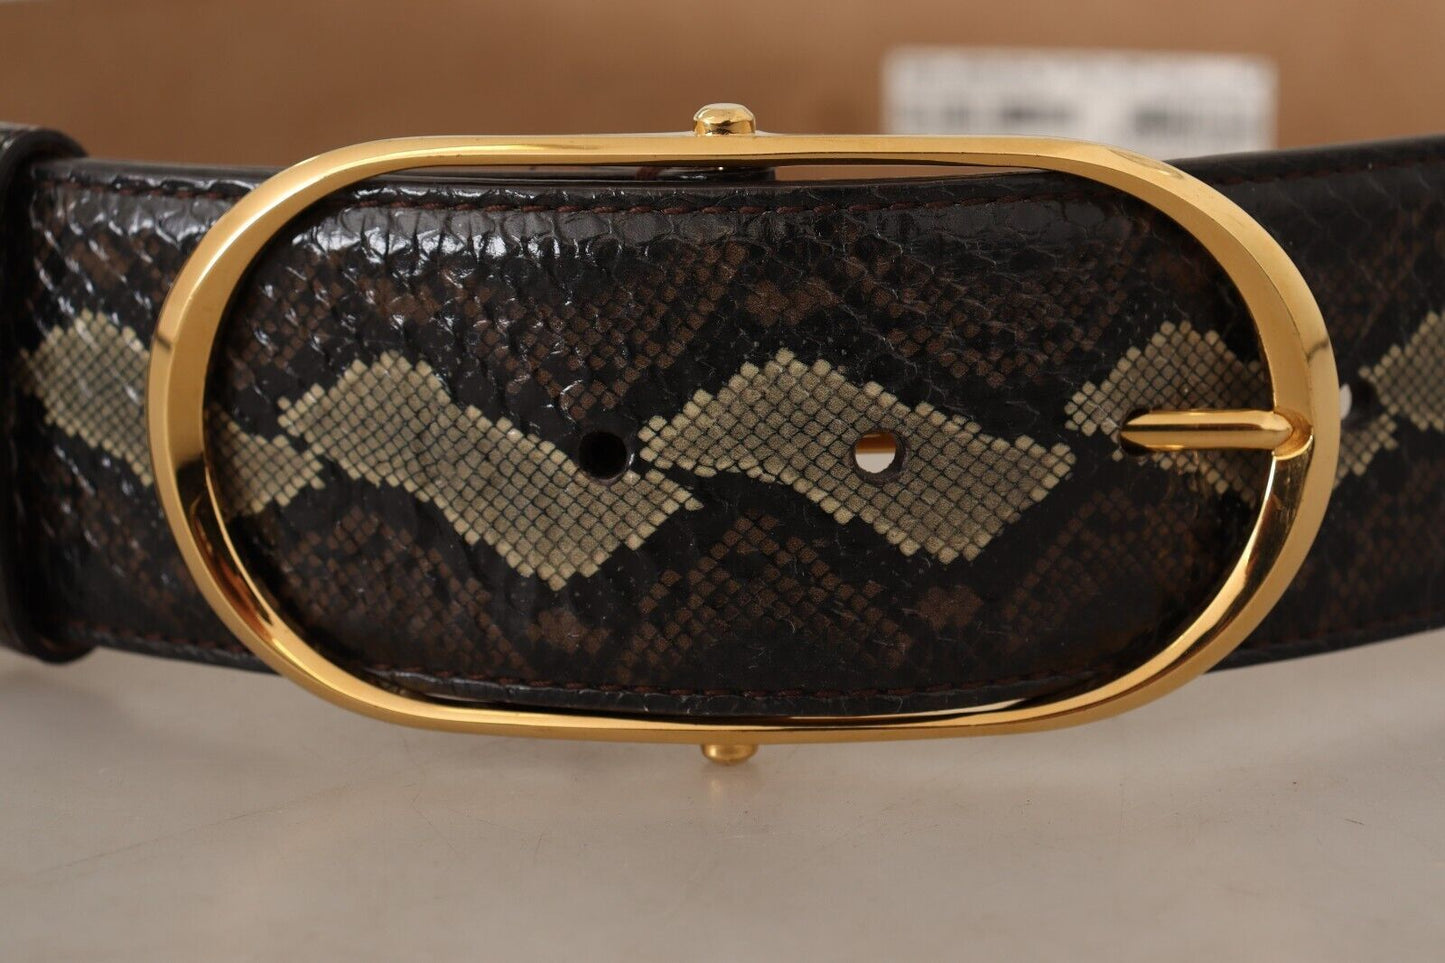 Dolce & Gabbana Elegant Snakeskin Belt with Gold Oval Buckle